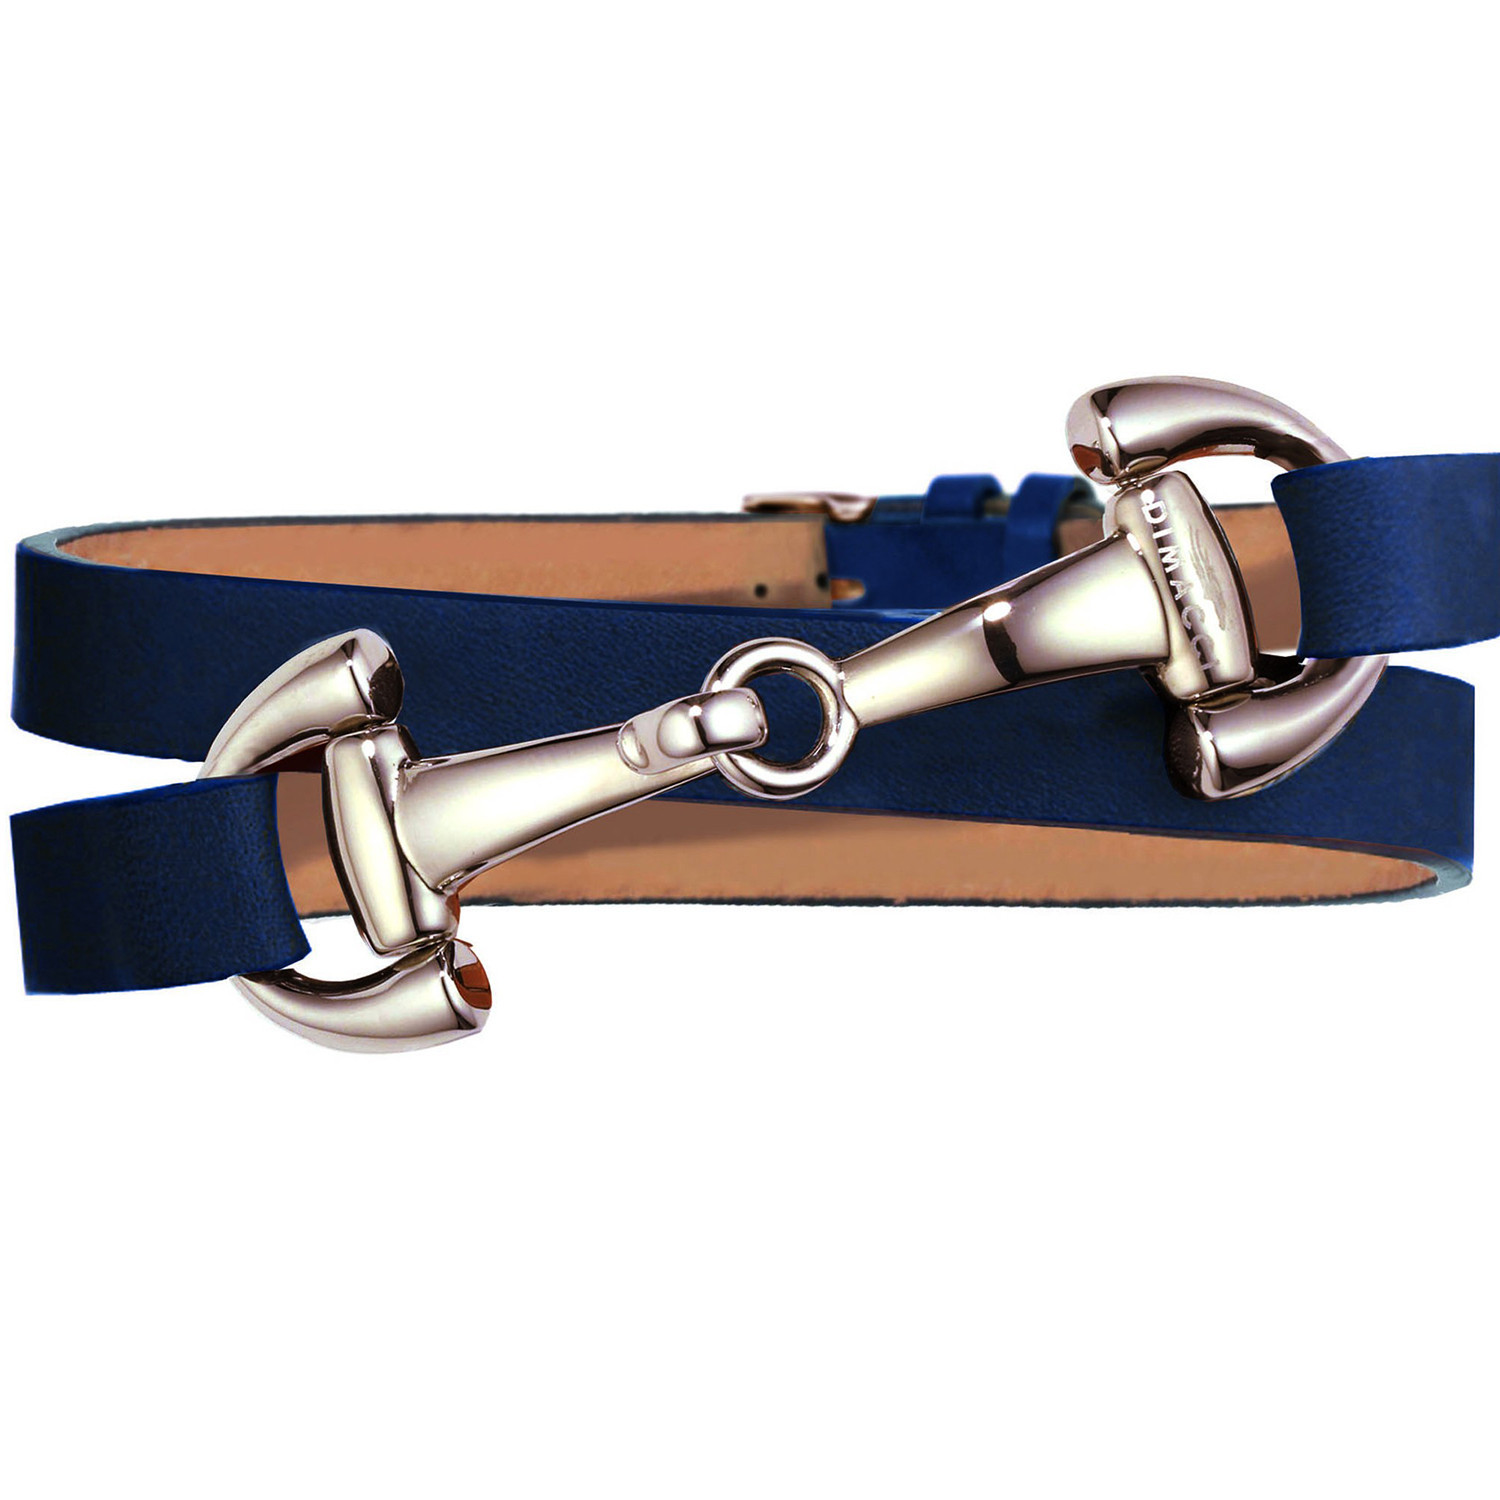 Bracelet Dimacci Ingrids Favorits acier rose
cuir bleu marine